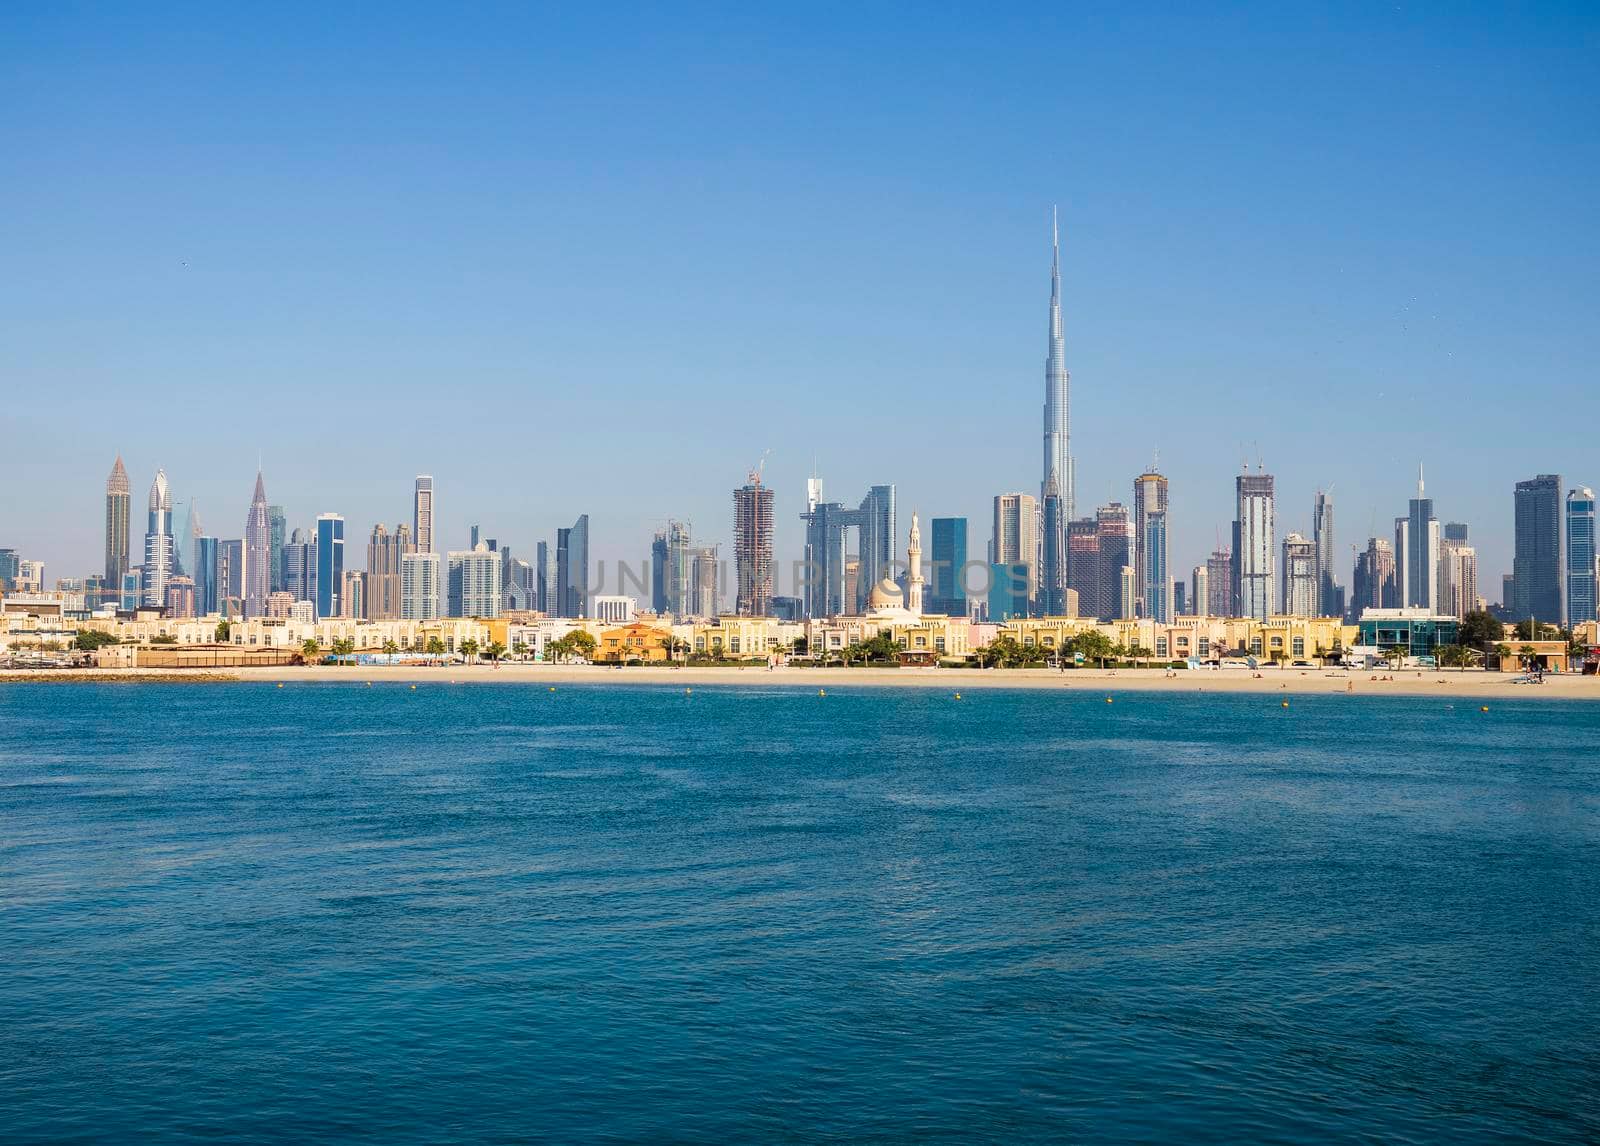 Dubai, UAE - 02.27.2021 Dubai public beach with city skyline on background.